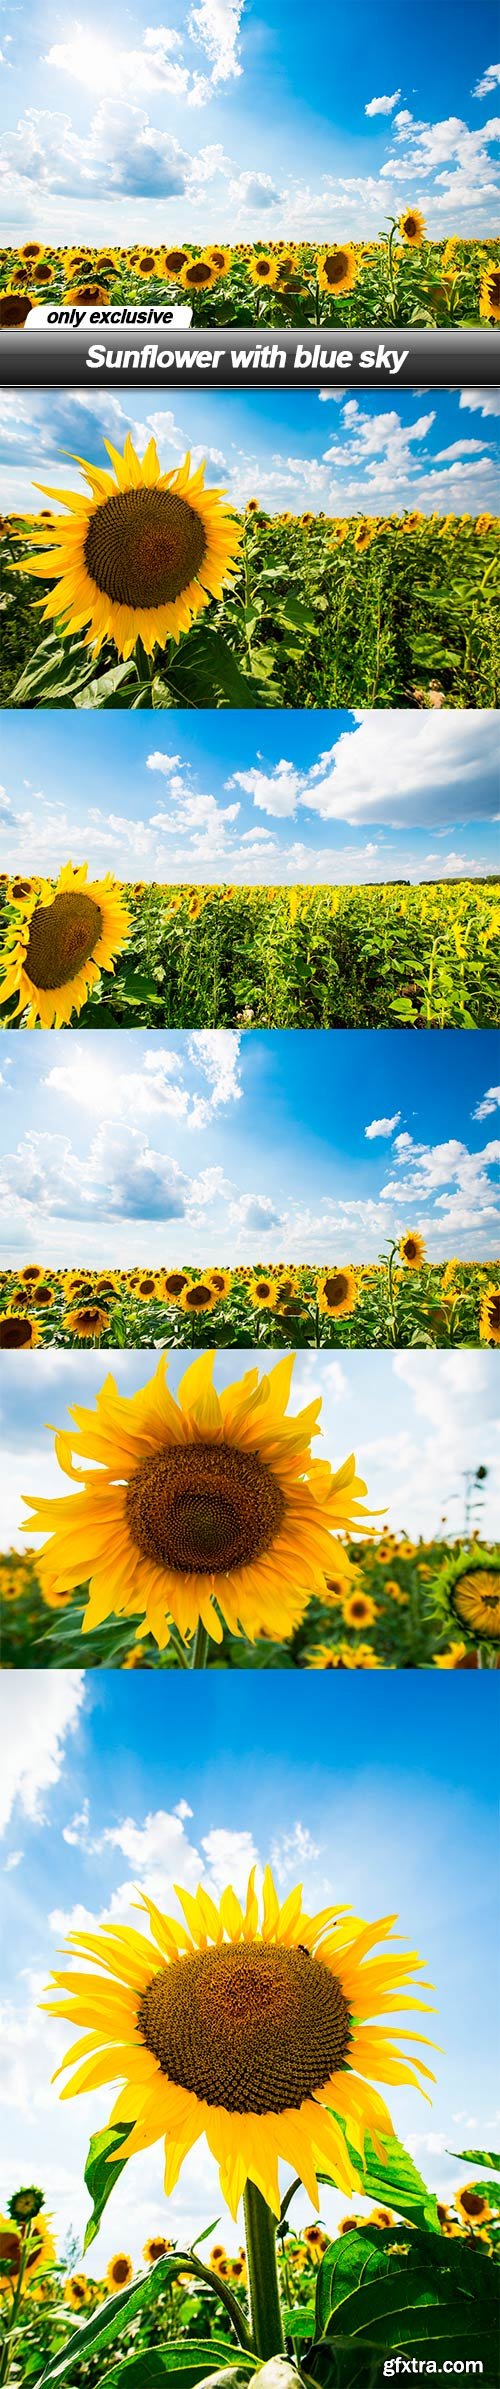 Sunflower with blue sky - 5 UHQ JPEG